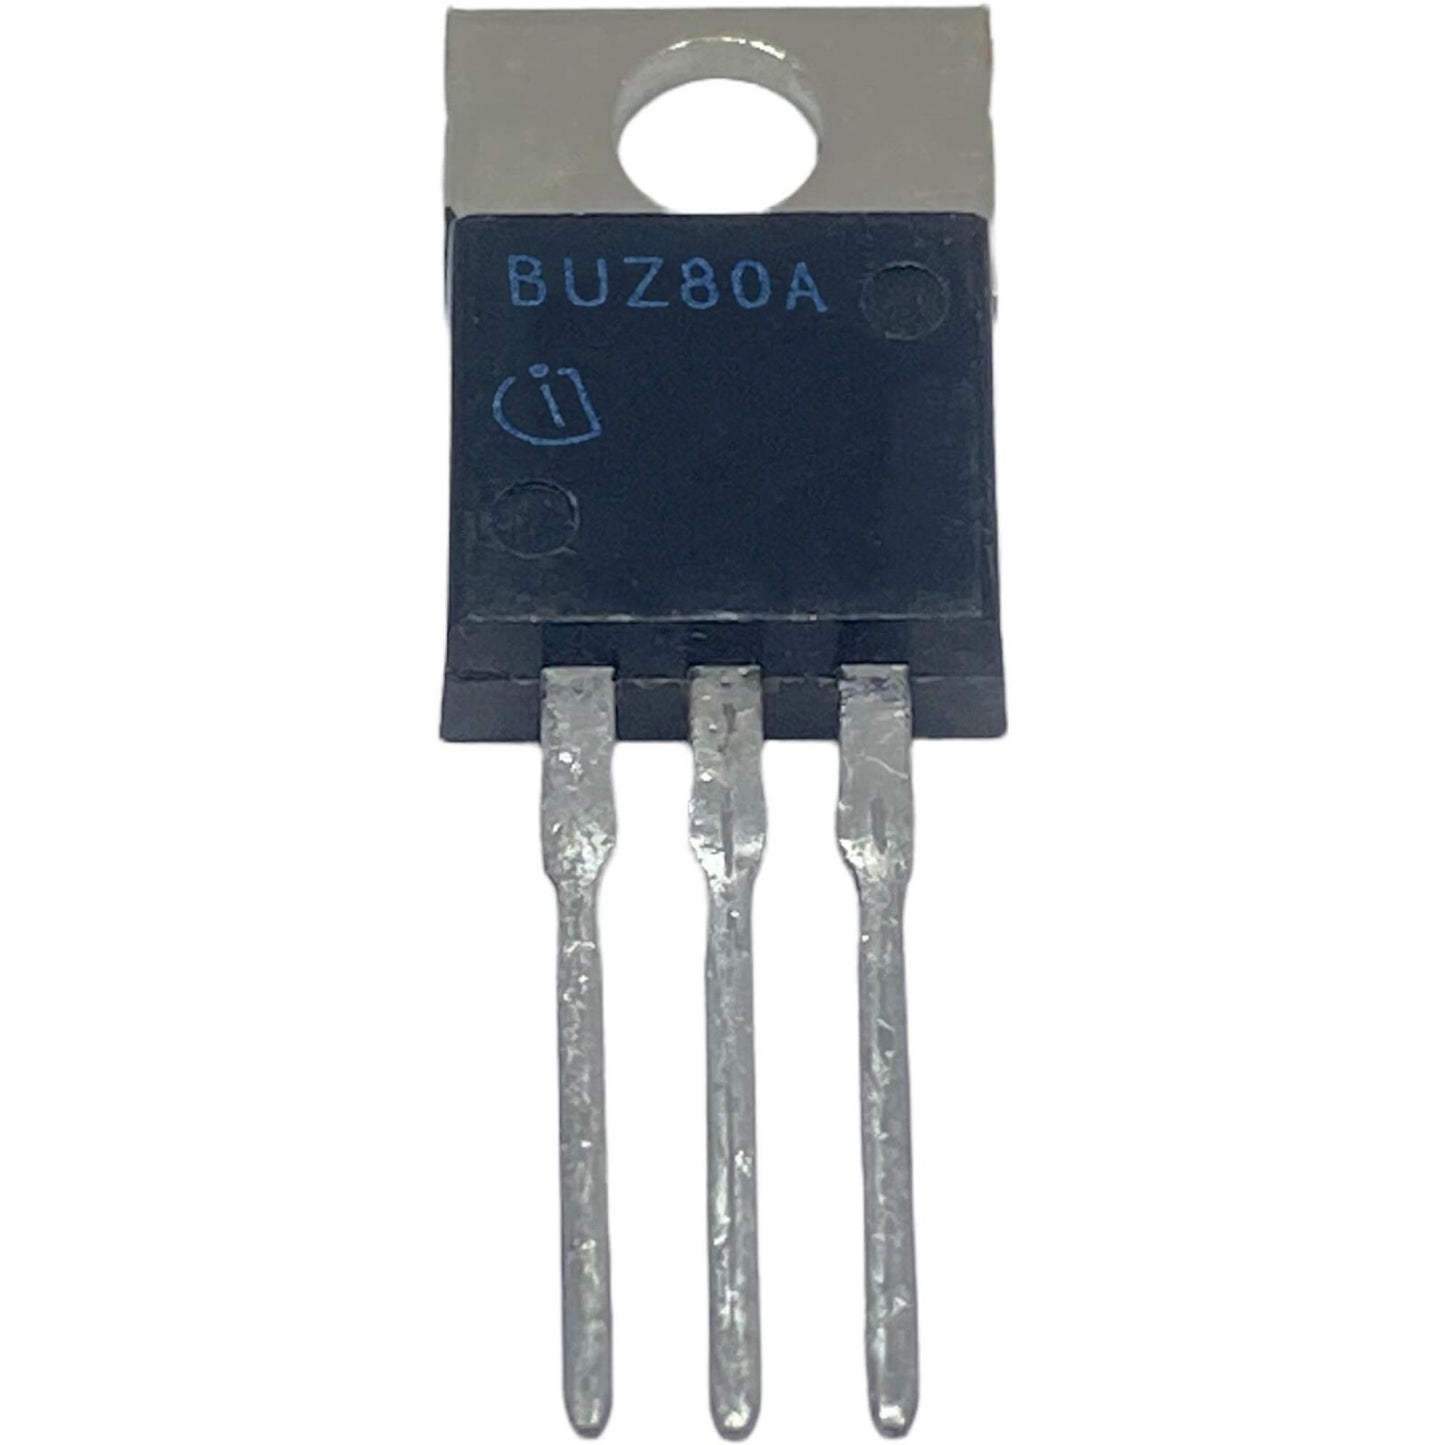 BUZ80A Componente elettronico, circuito integrato, transistor, 3 contatti